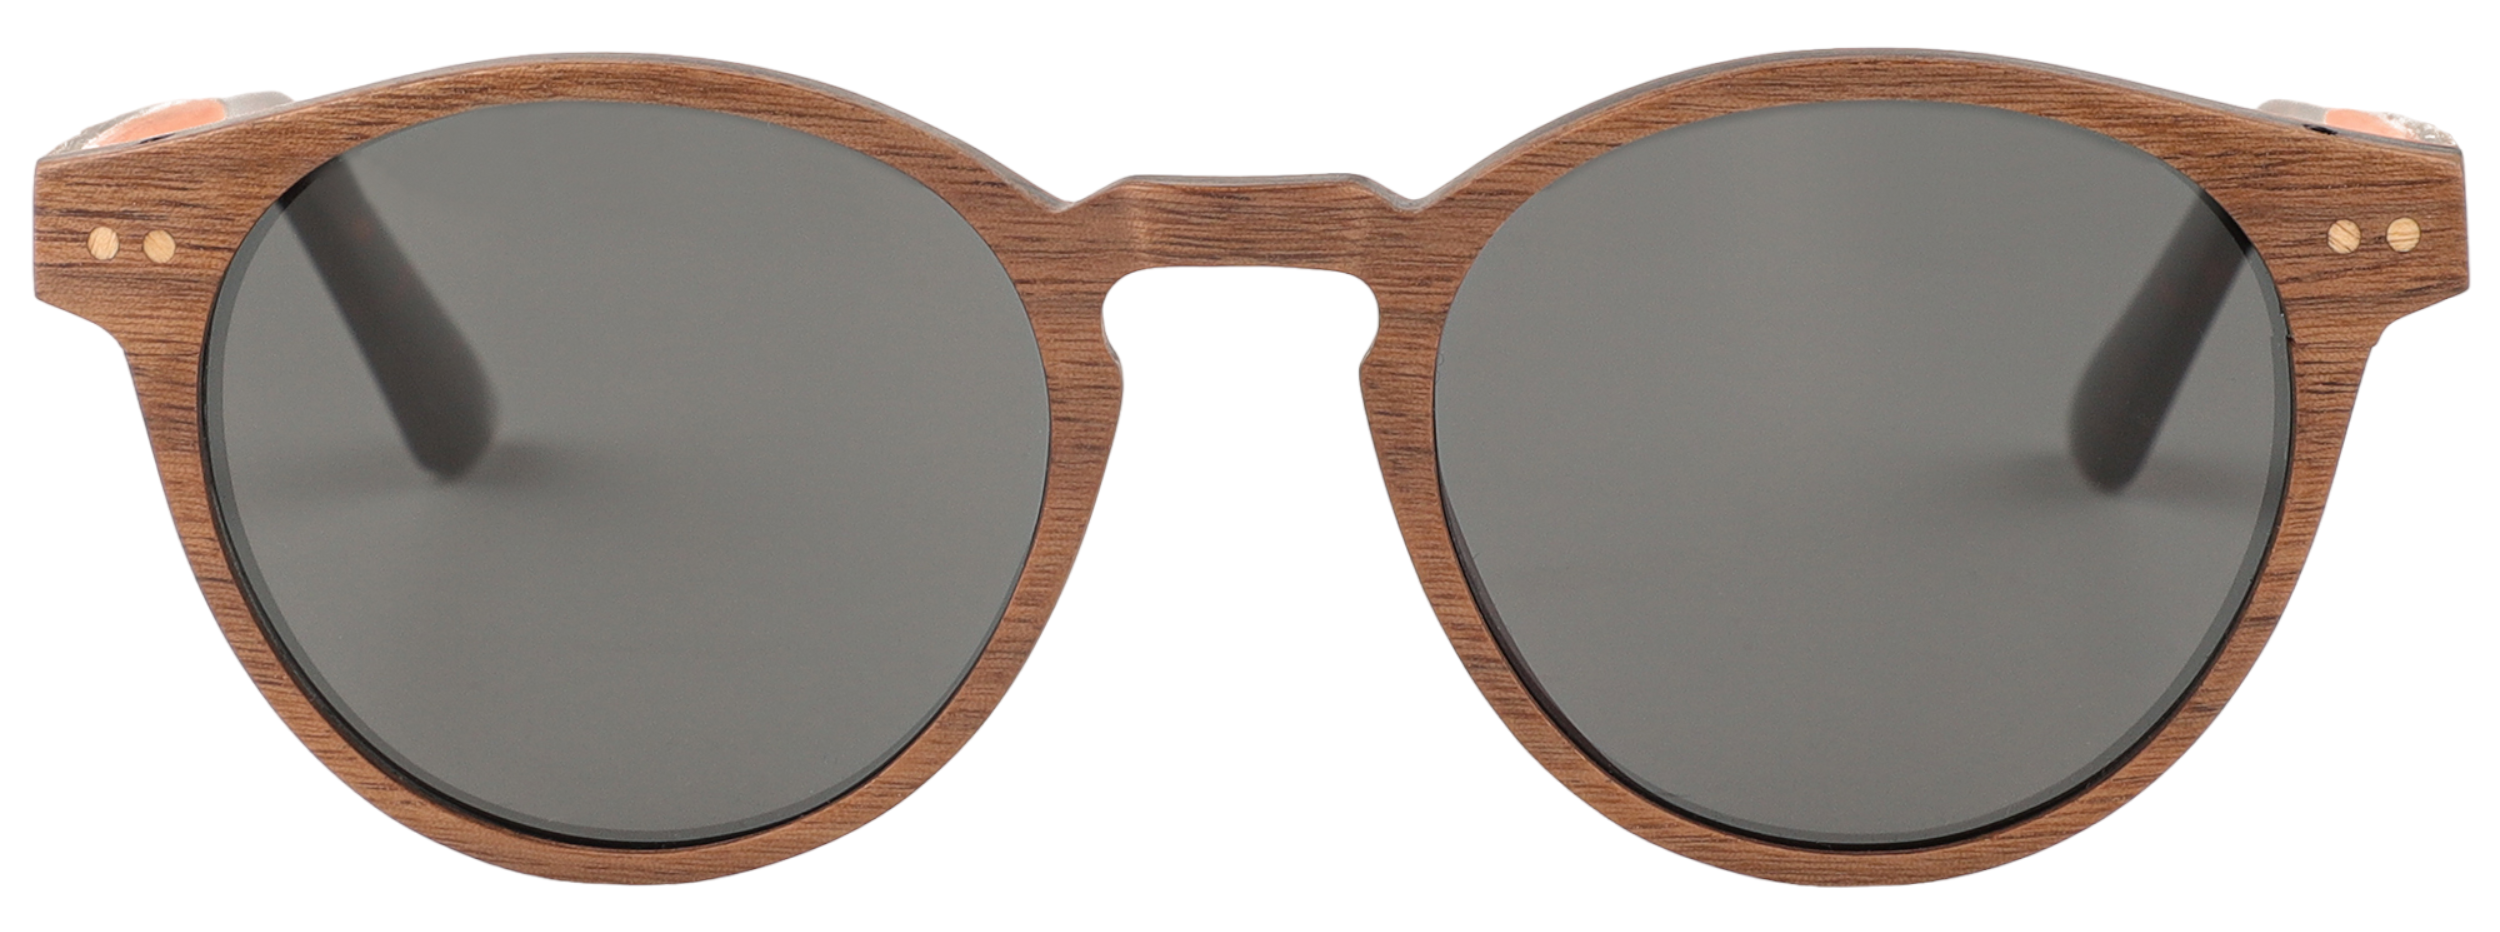 Monarch Sunglasses (RX Compatible)